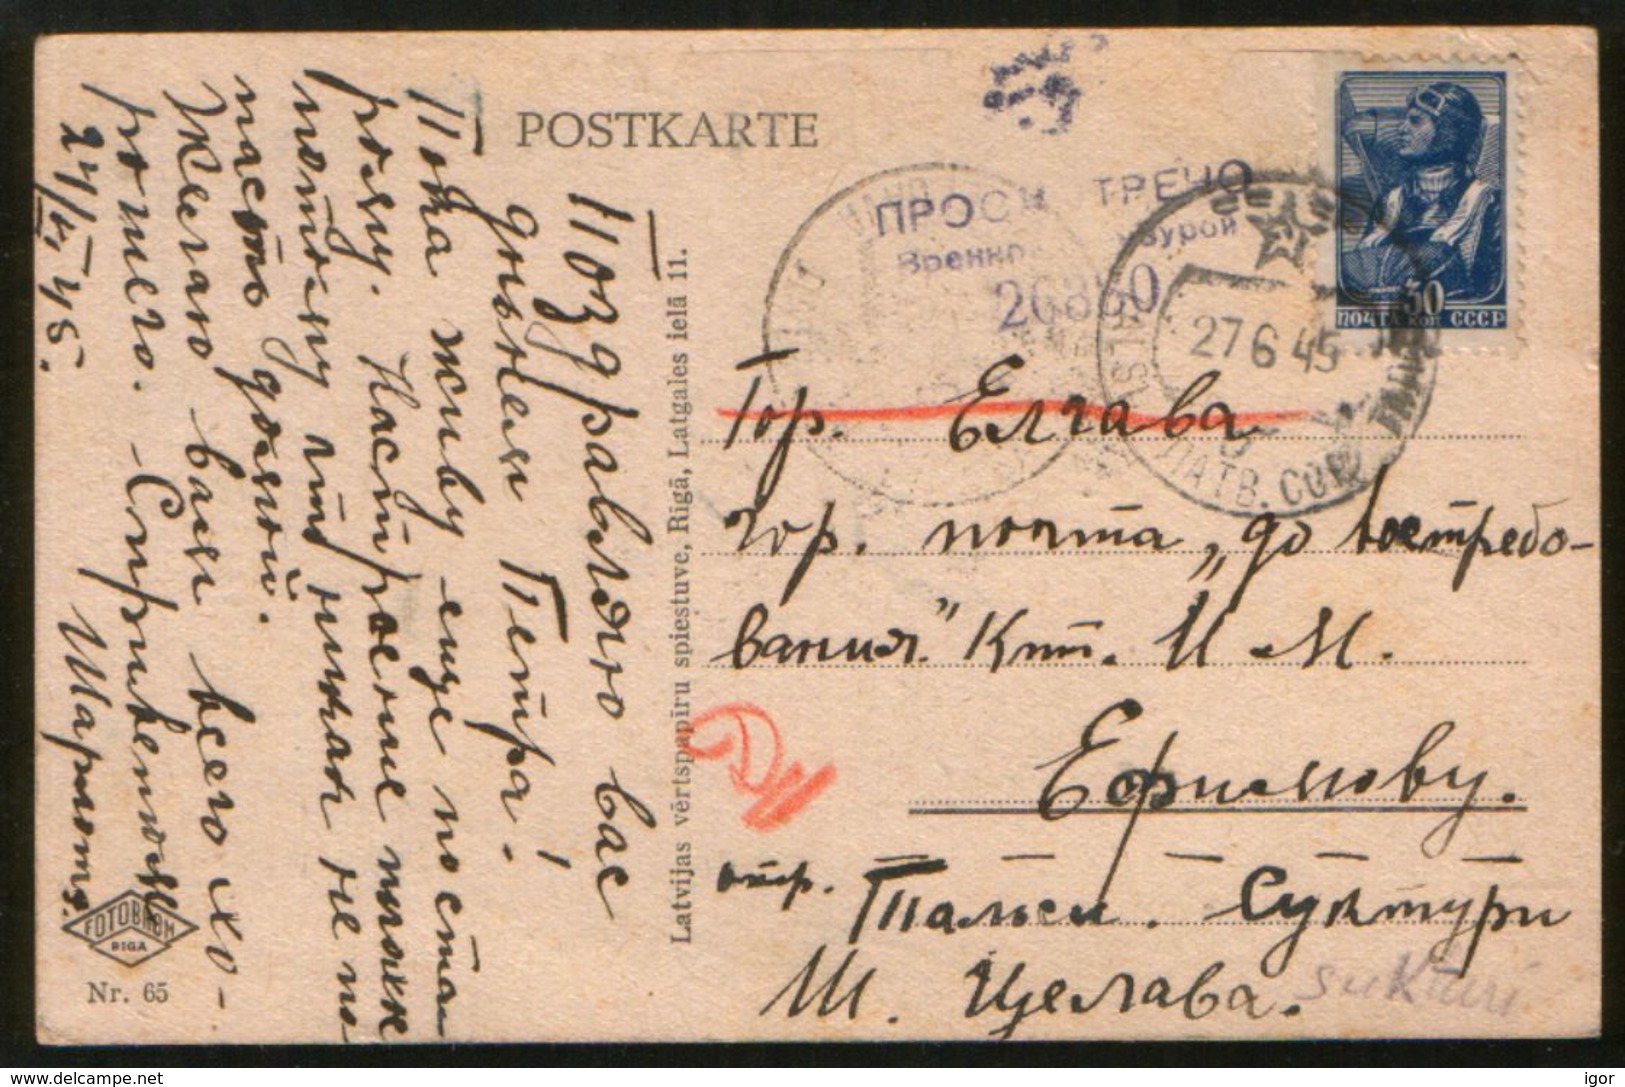 Latvia USRR 1945 Postcard Talsi - Jelgava, Censorship - Latvia